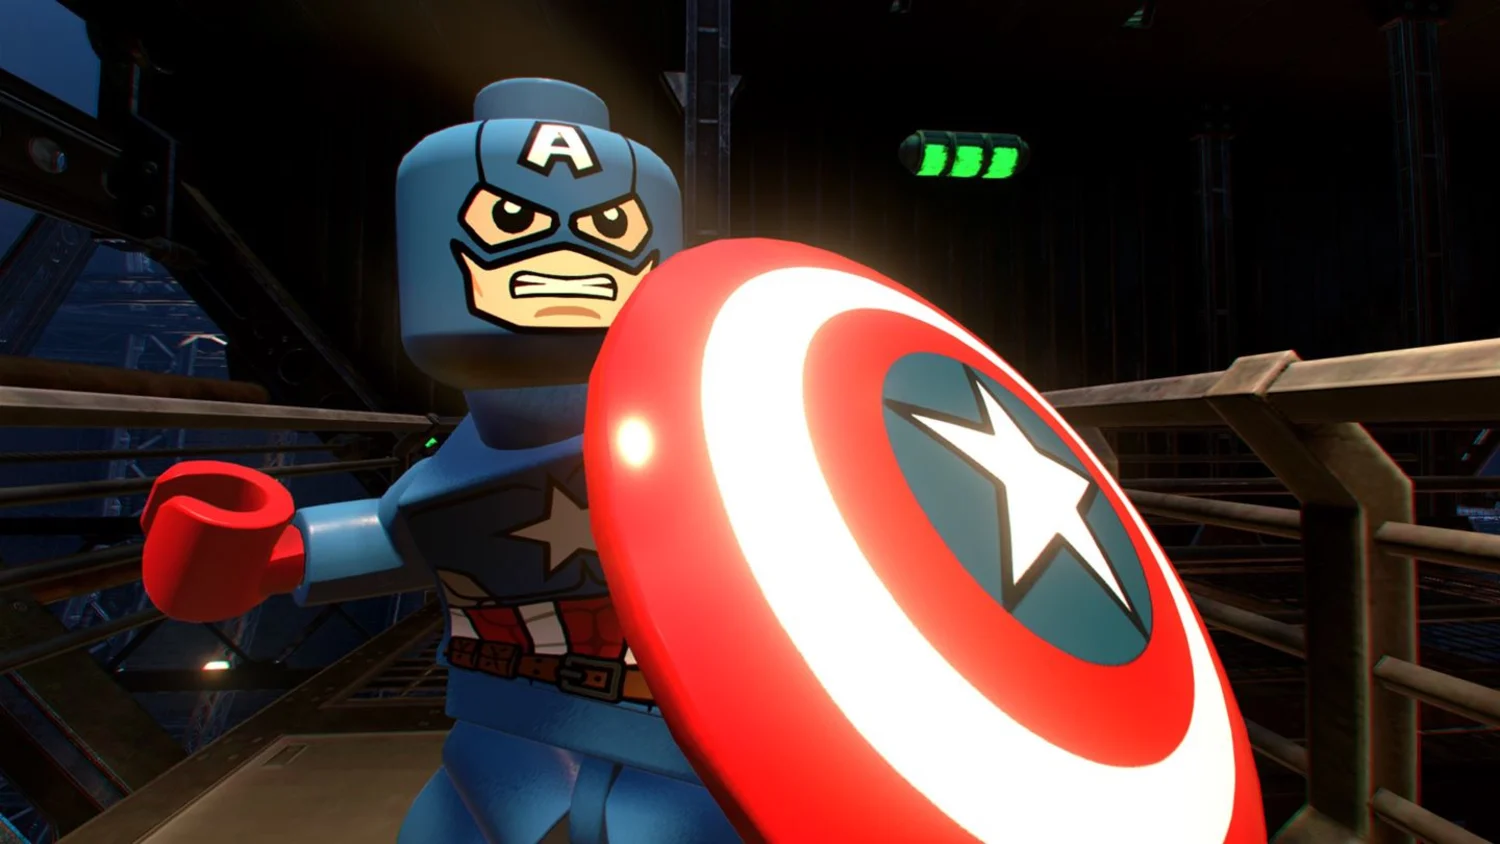 Jogo Lego Marvel Super Heroes 2 - PS4: Melhor Preço